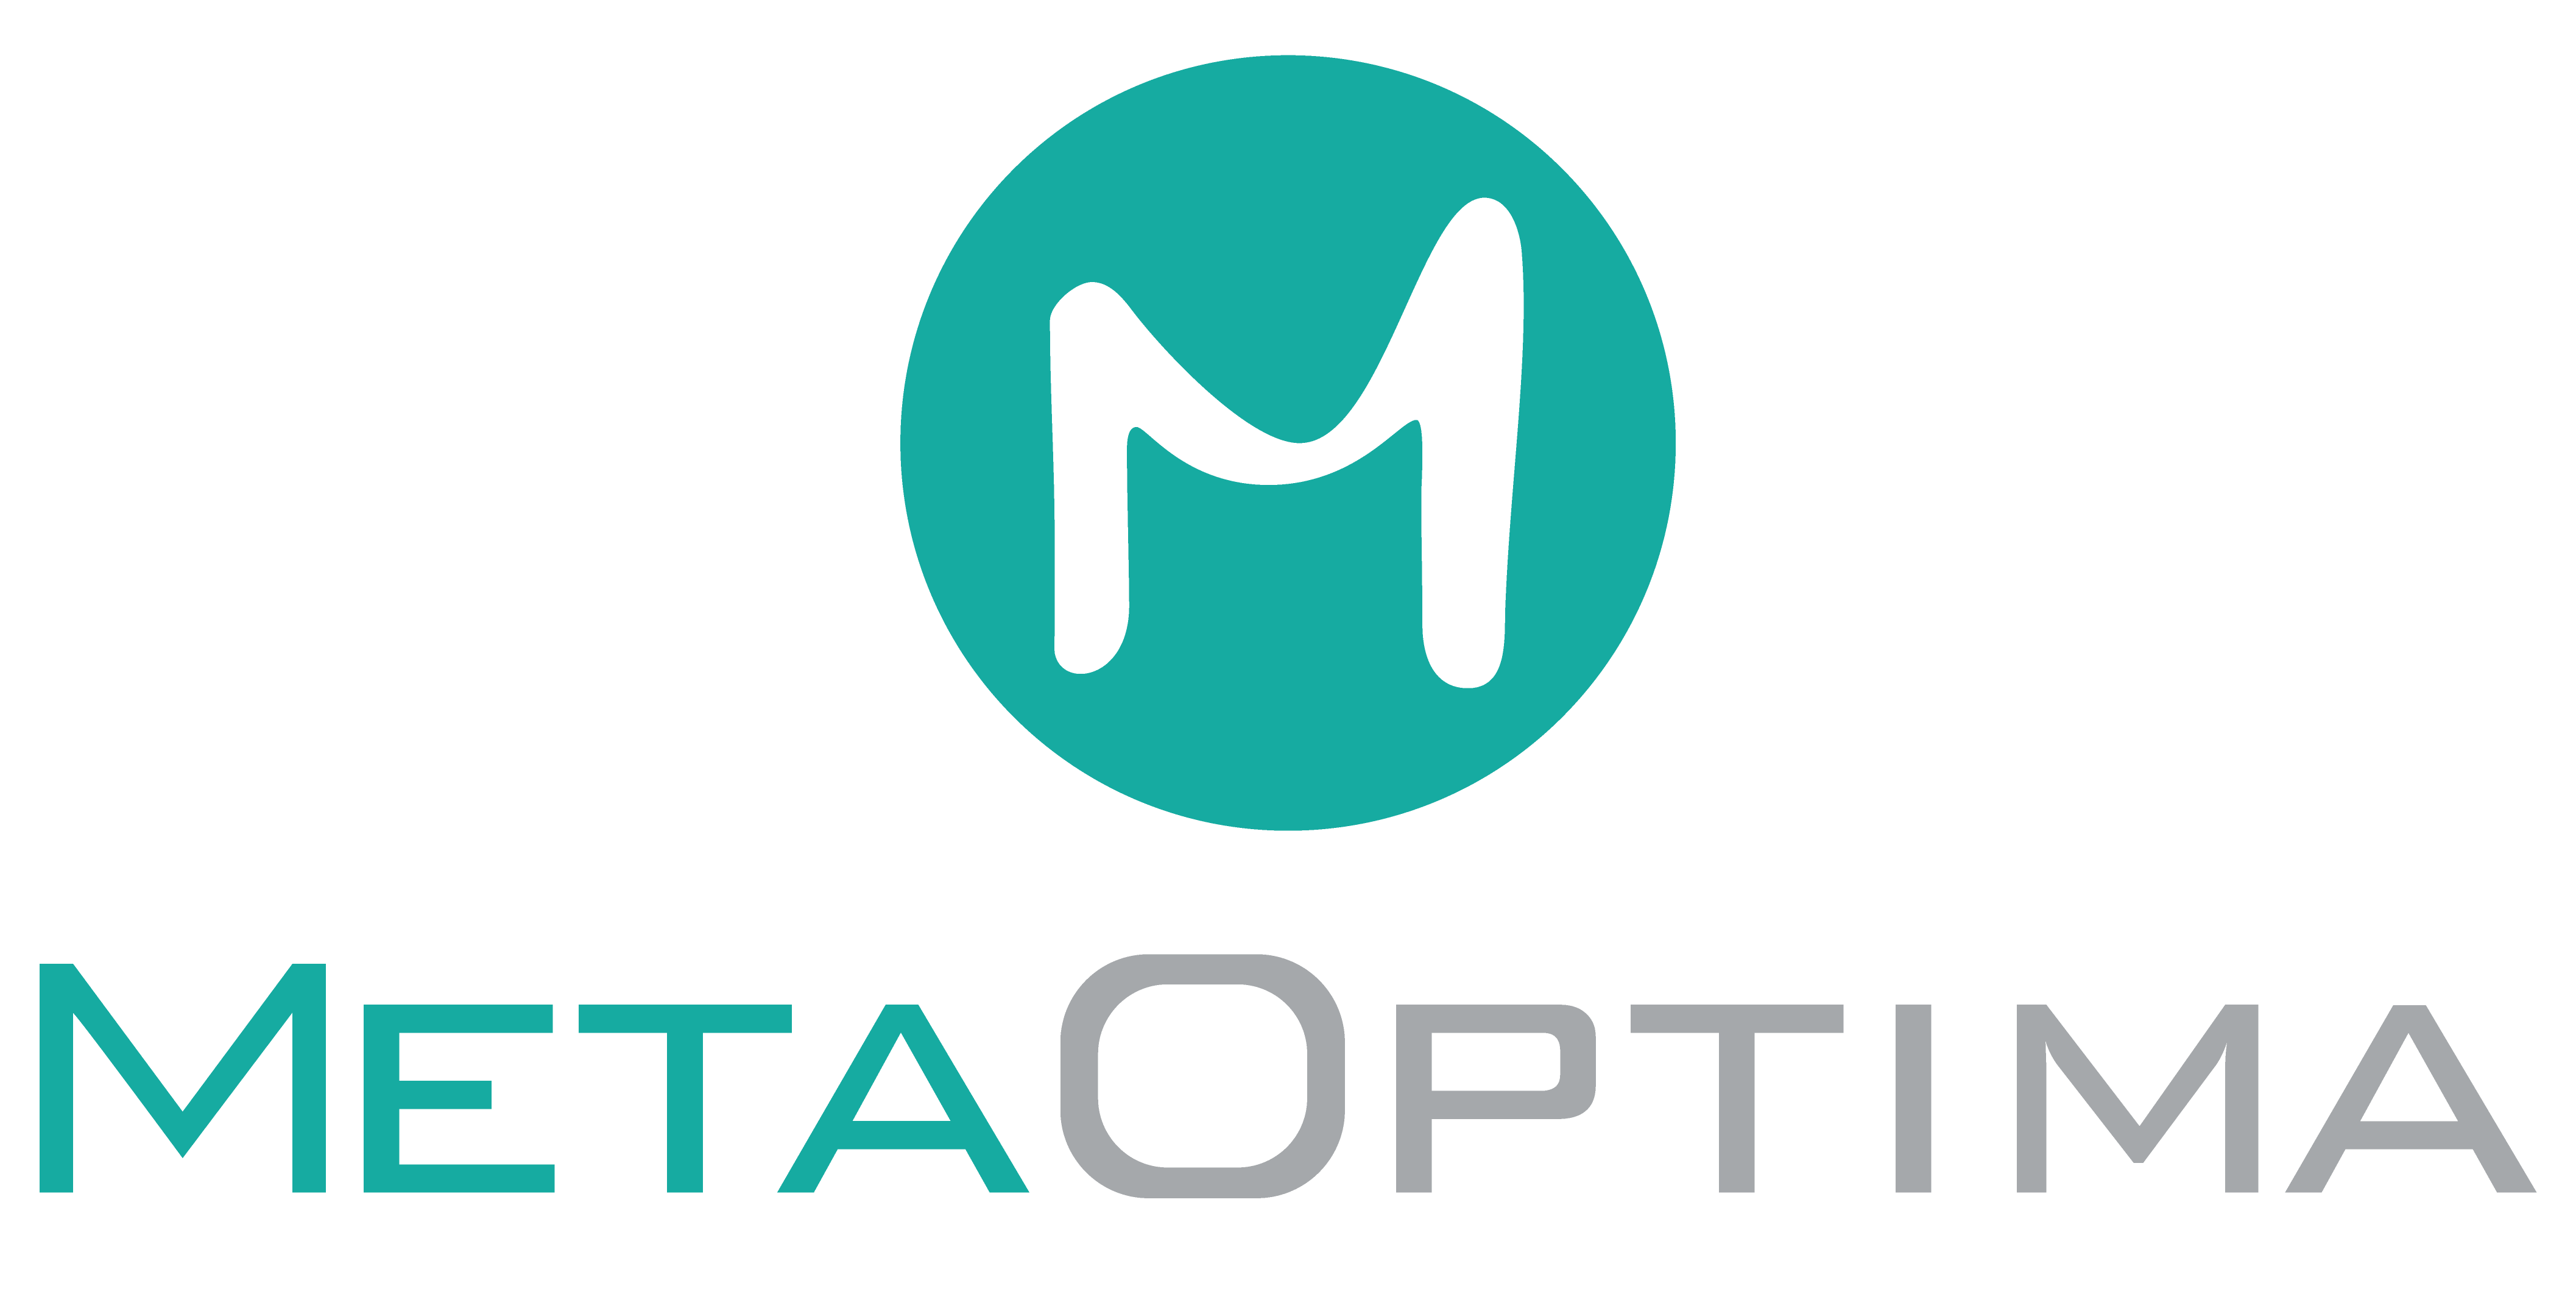 MetaOptima Logotype